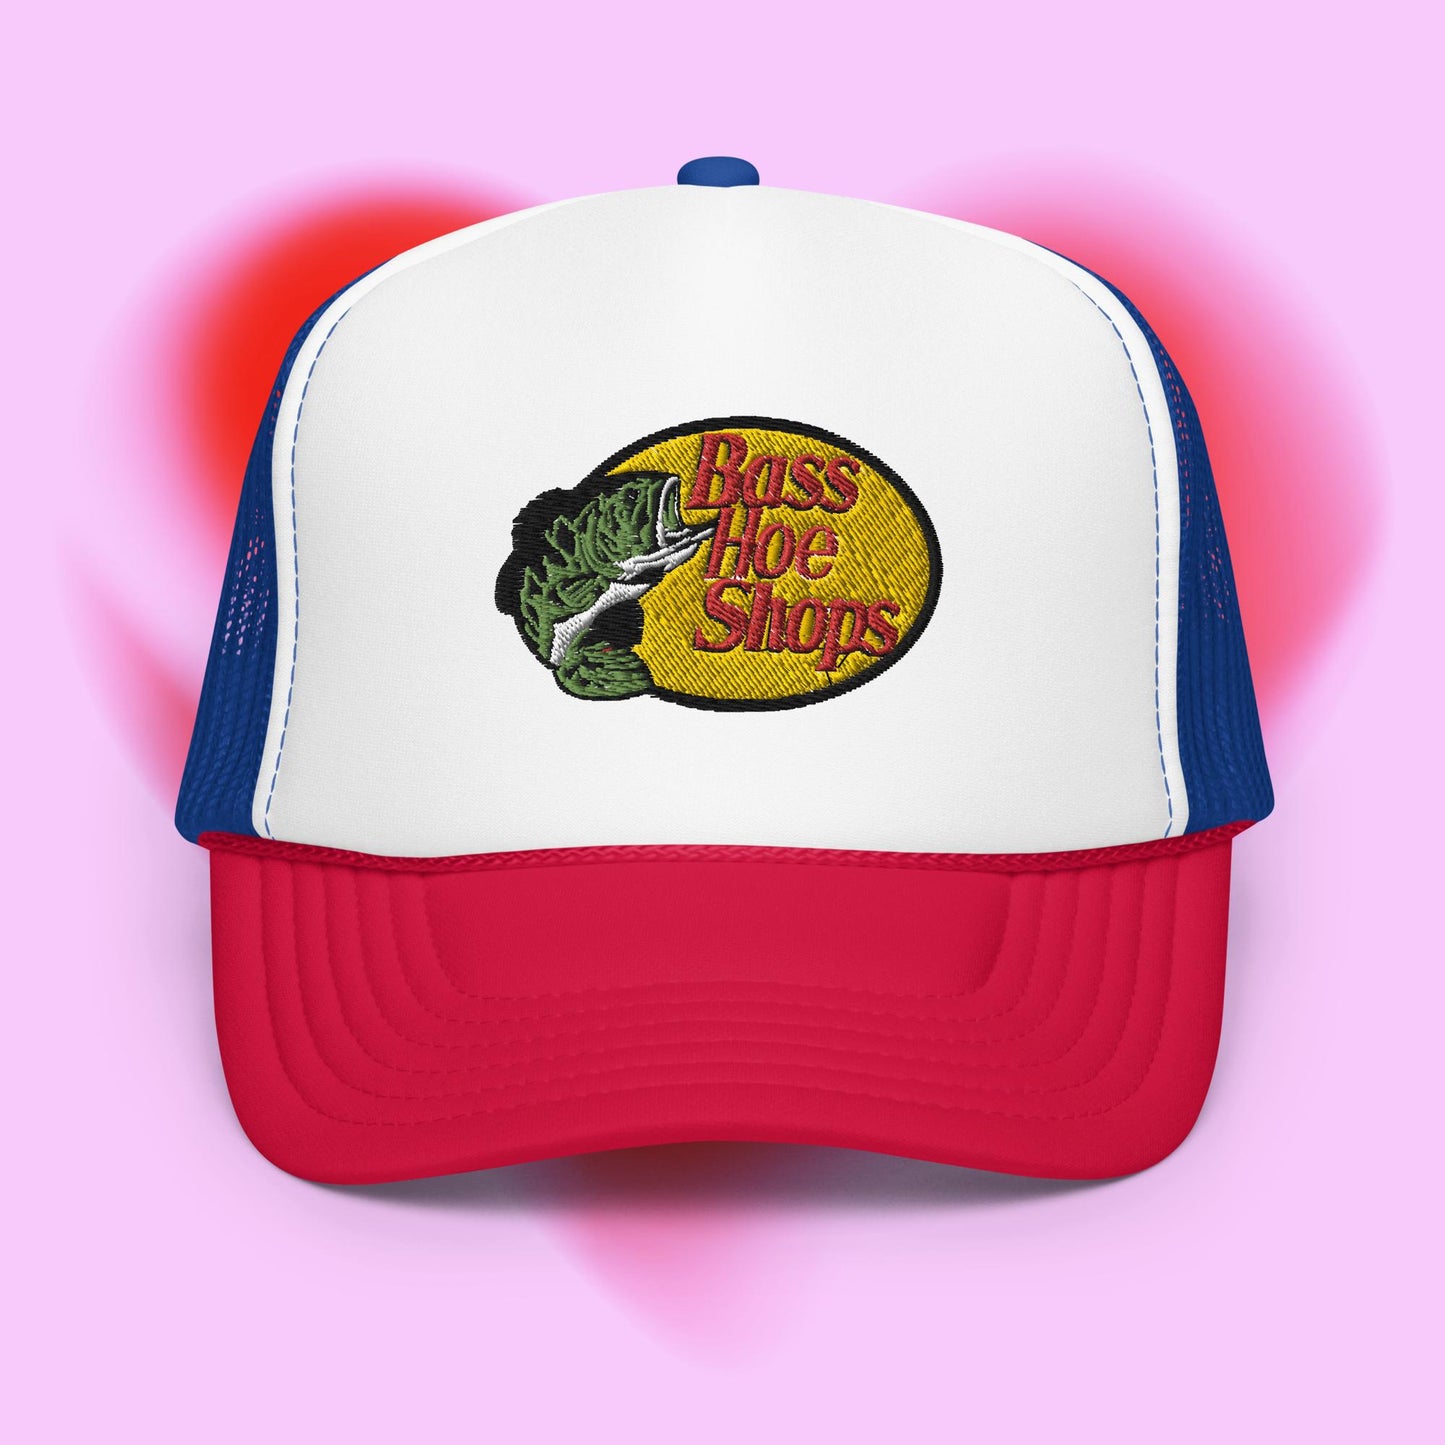 Bass H*e Shops Trucker Hat